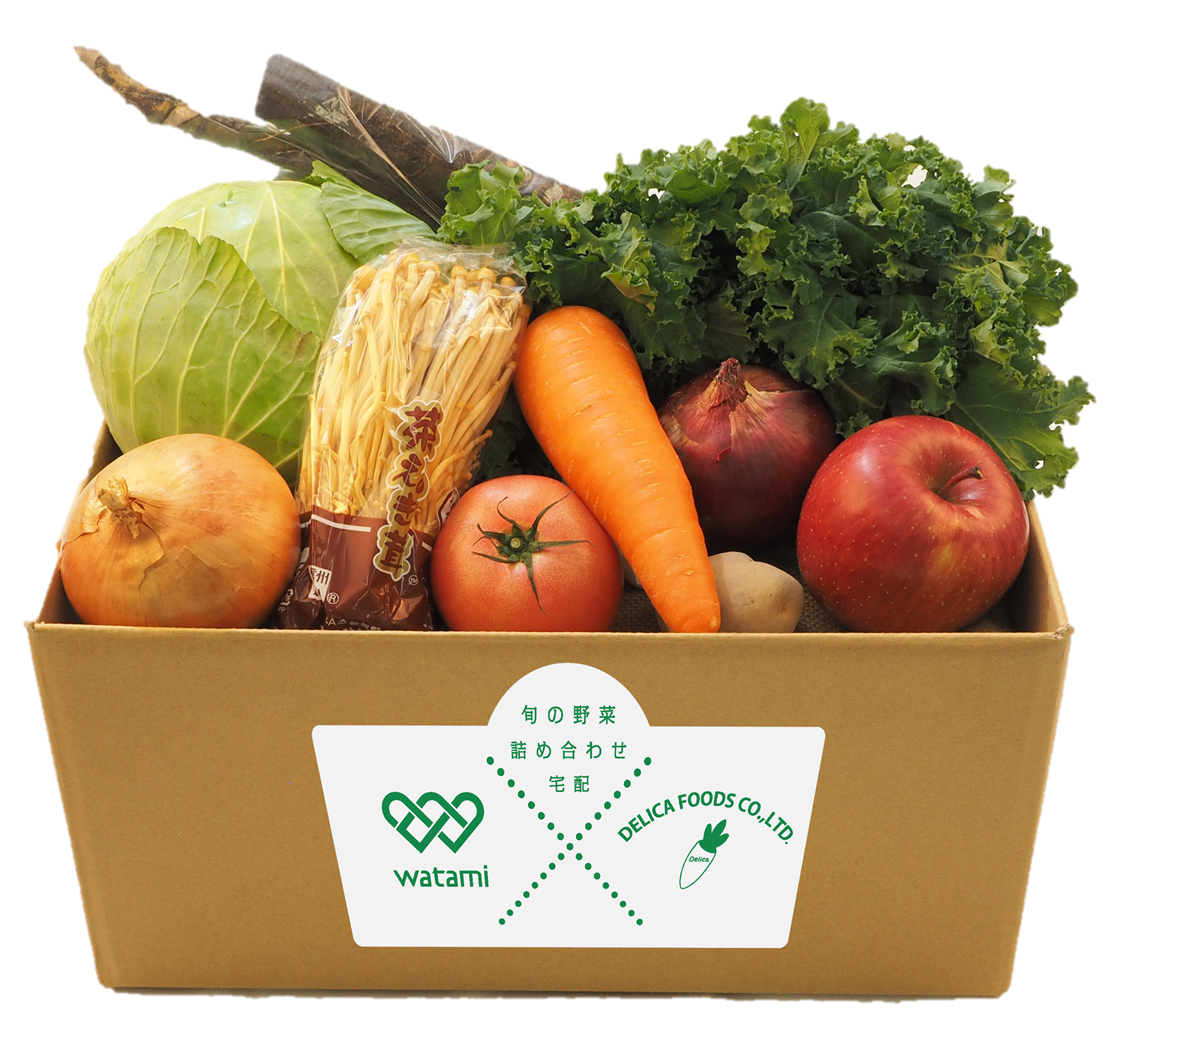 旬の野菜box を西日本エリアへ拡大 緊急事態宣言での外出自粛や巣ごもり需要に対応 ワタミ株式会社のプレスリリース